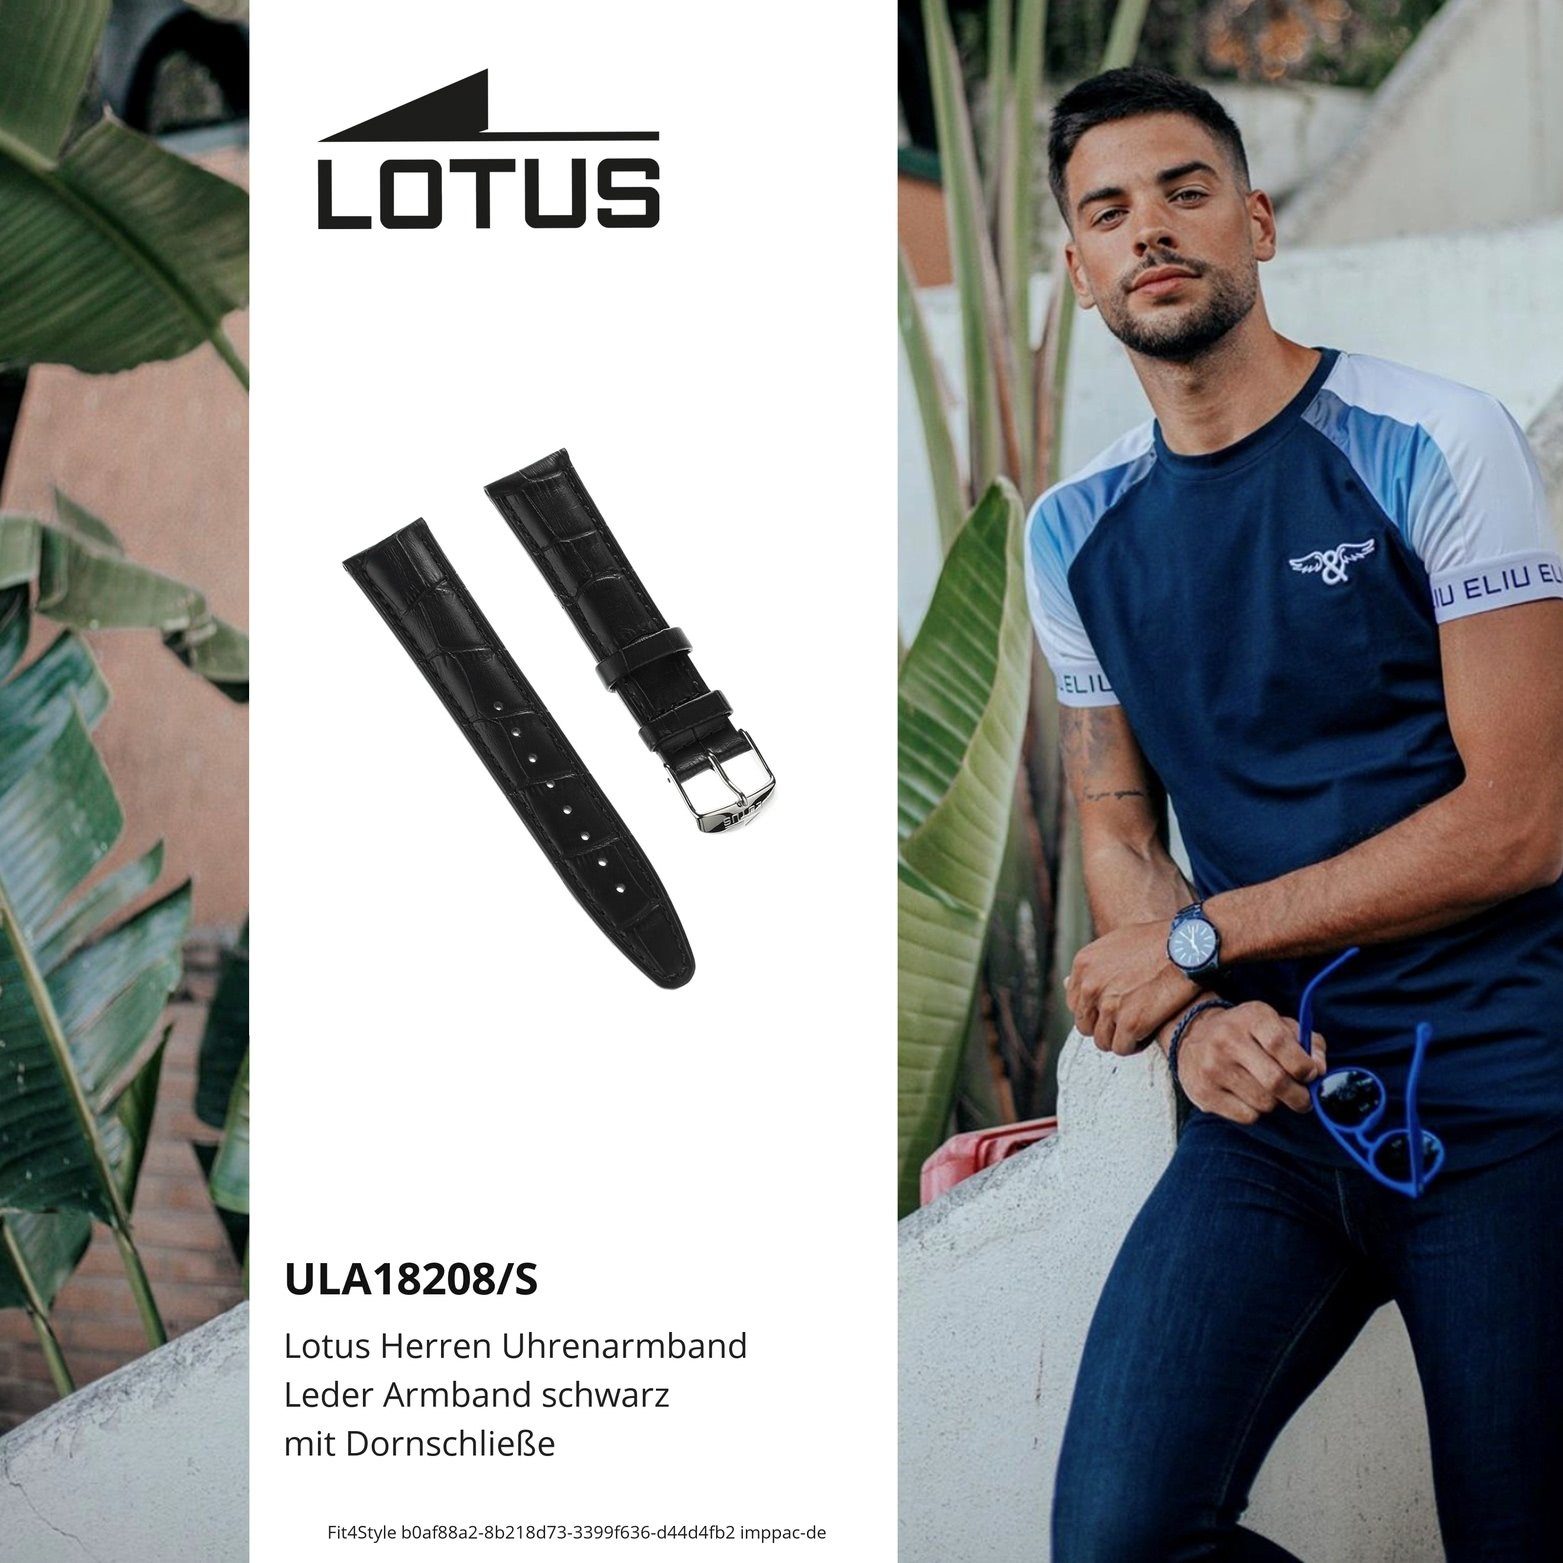 Lotus Uhrenarmband Lotus Herrenuhr Uhrenarmband Lederarmband, mit 21mm, Fashion-Style Herren